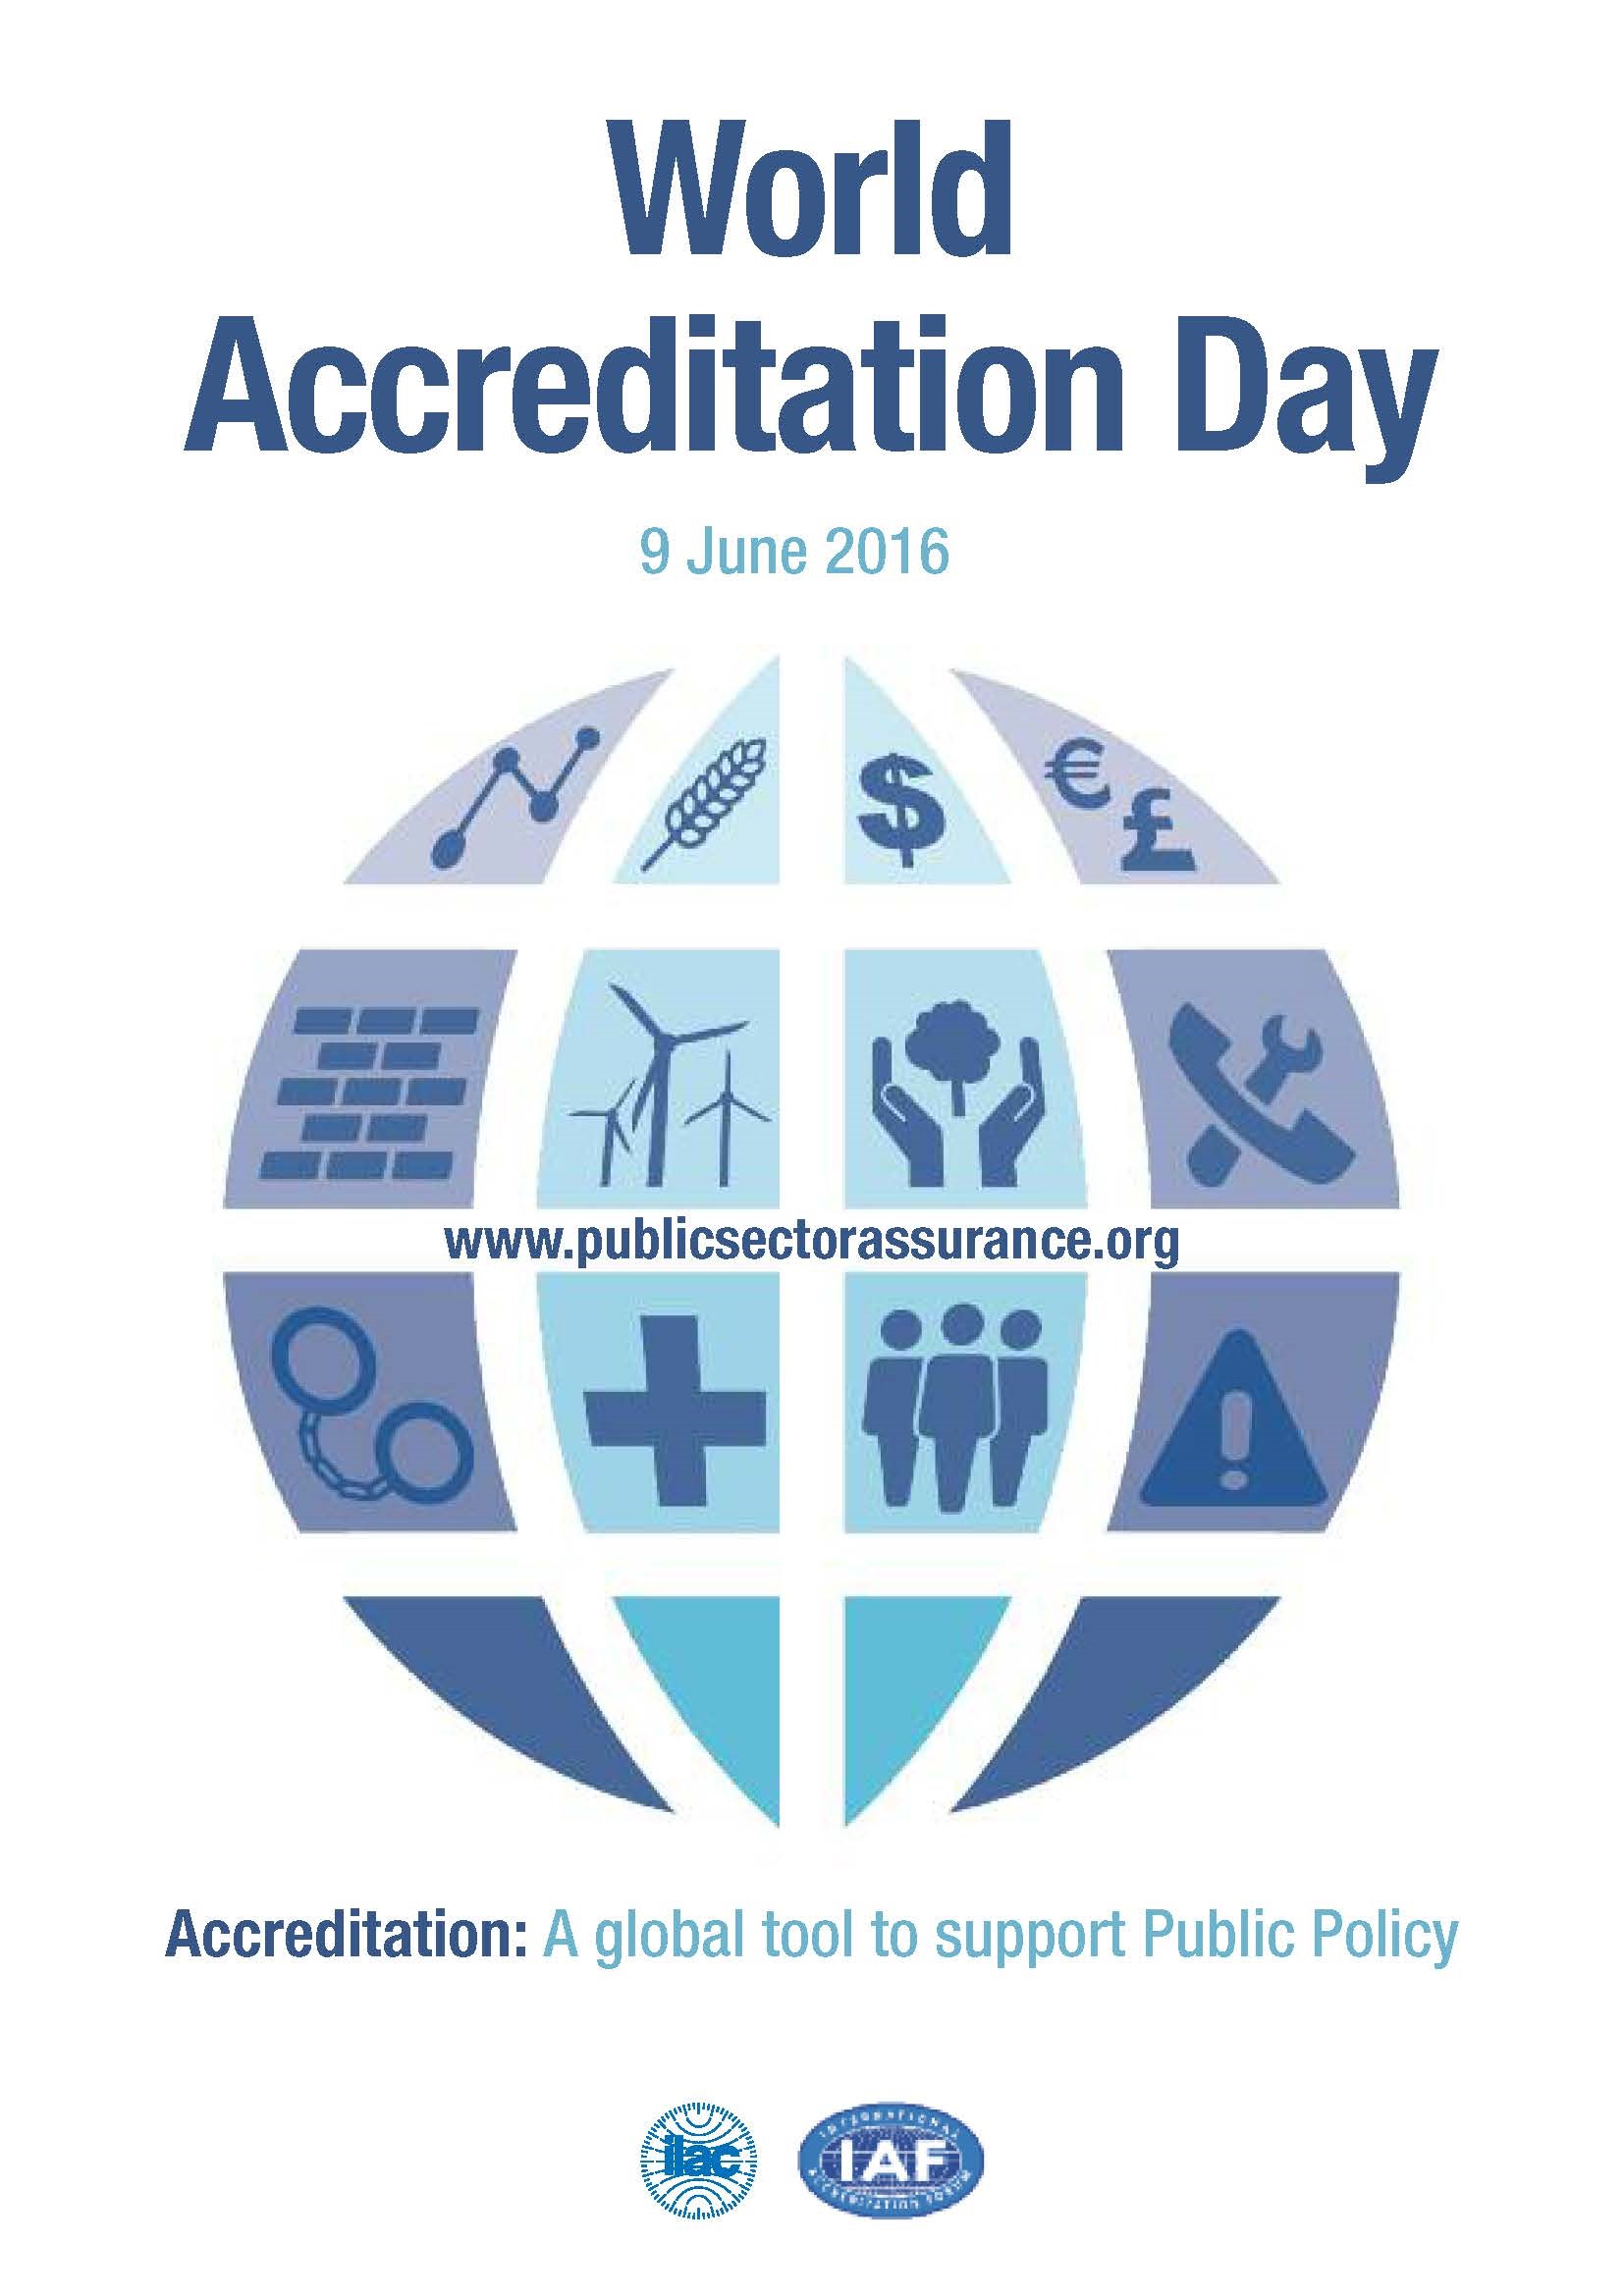 09 de junio, Día Internacional de la Acreditación: "Una herramienta global para apoyar las políticas públicas"